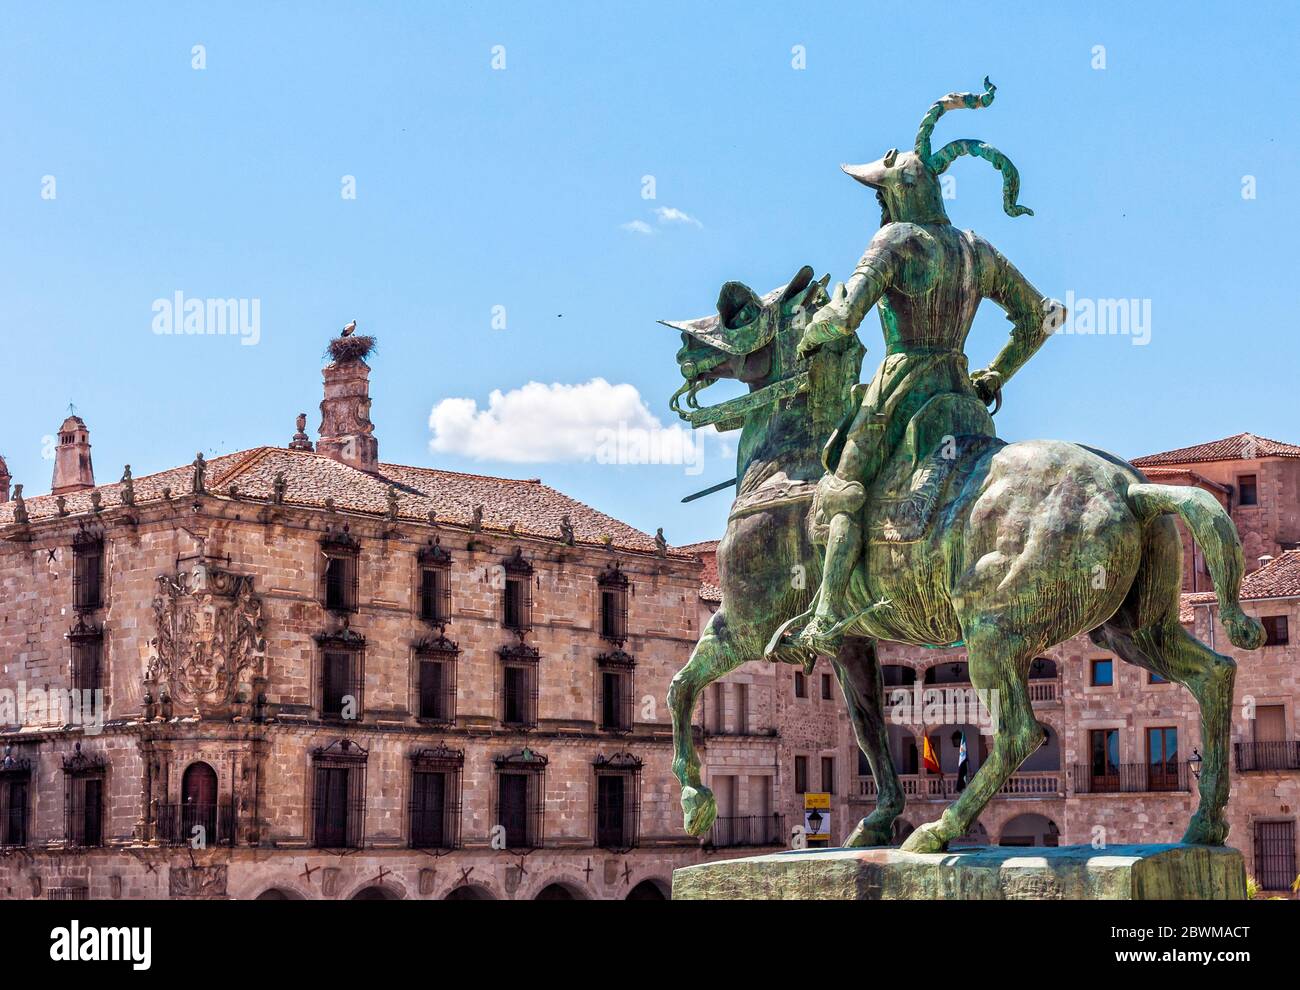 Monumento Ecuestre de Francisco Pizarro y Palacio de la Conquista. Plaza Mayor de Trujillo. Cáceres. Extremadura. España Stock Photo